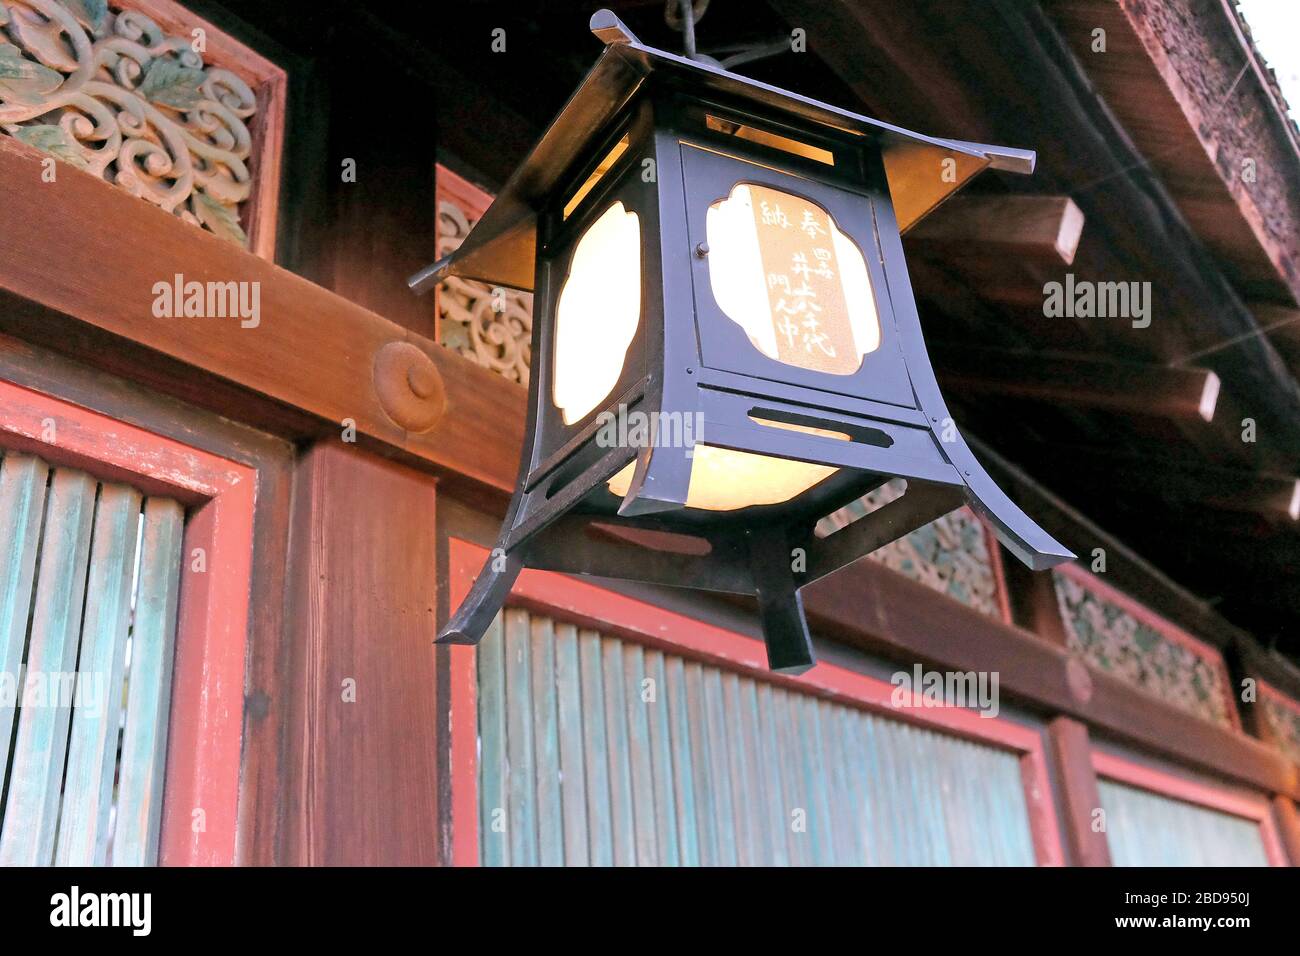 Hanging Japanese lantern in Tokyo, Japan. Stock Photo